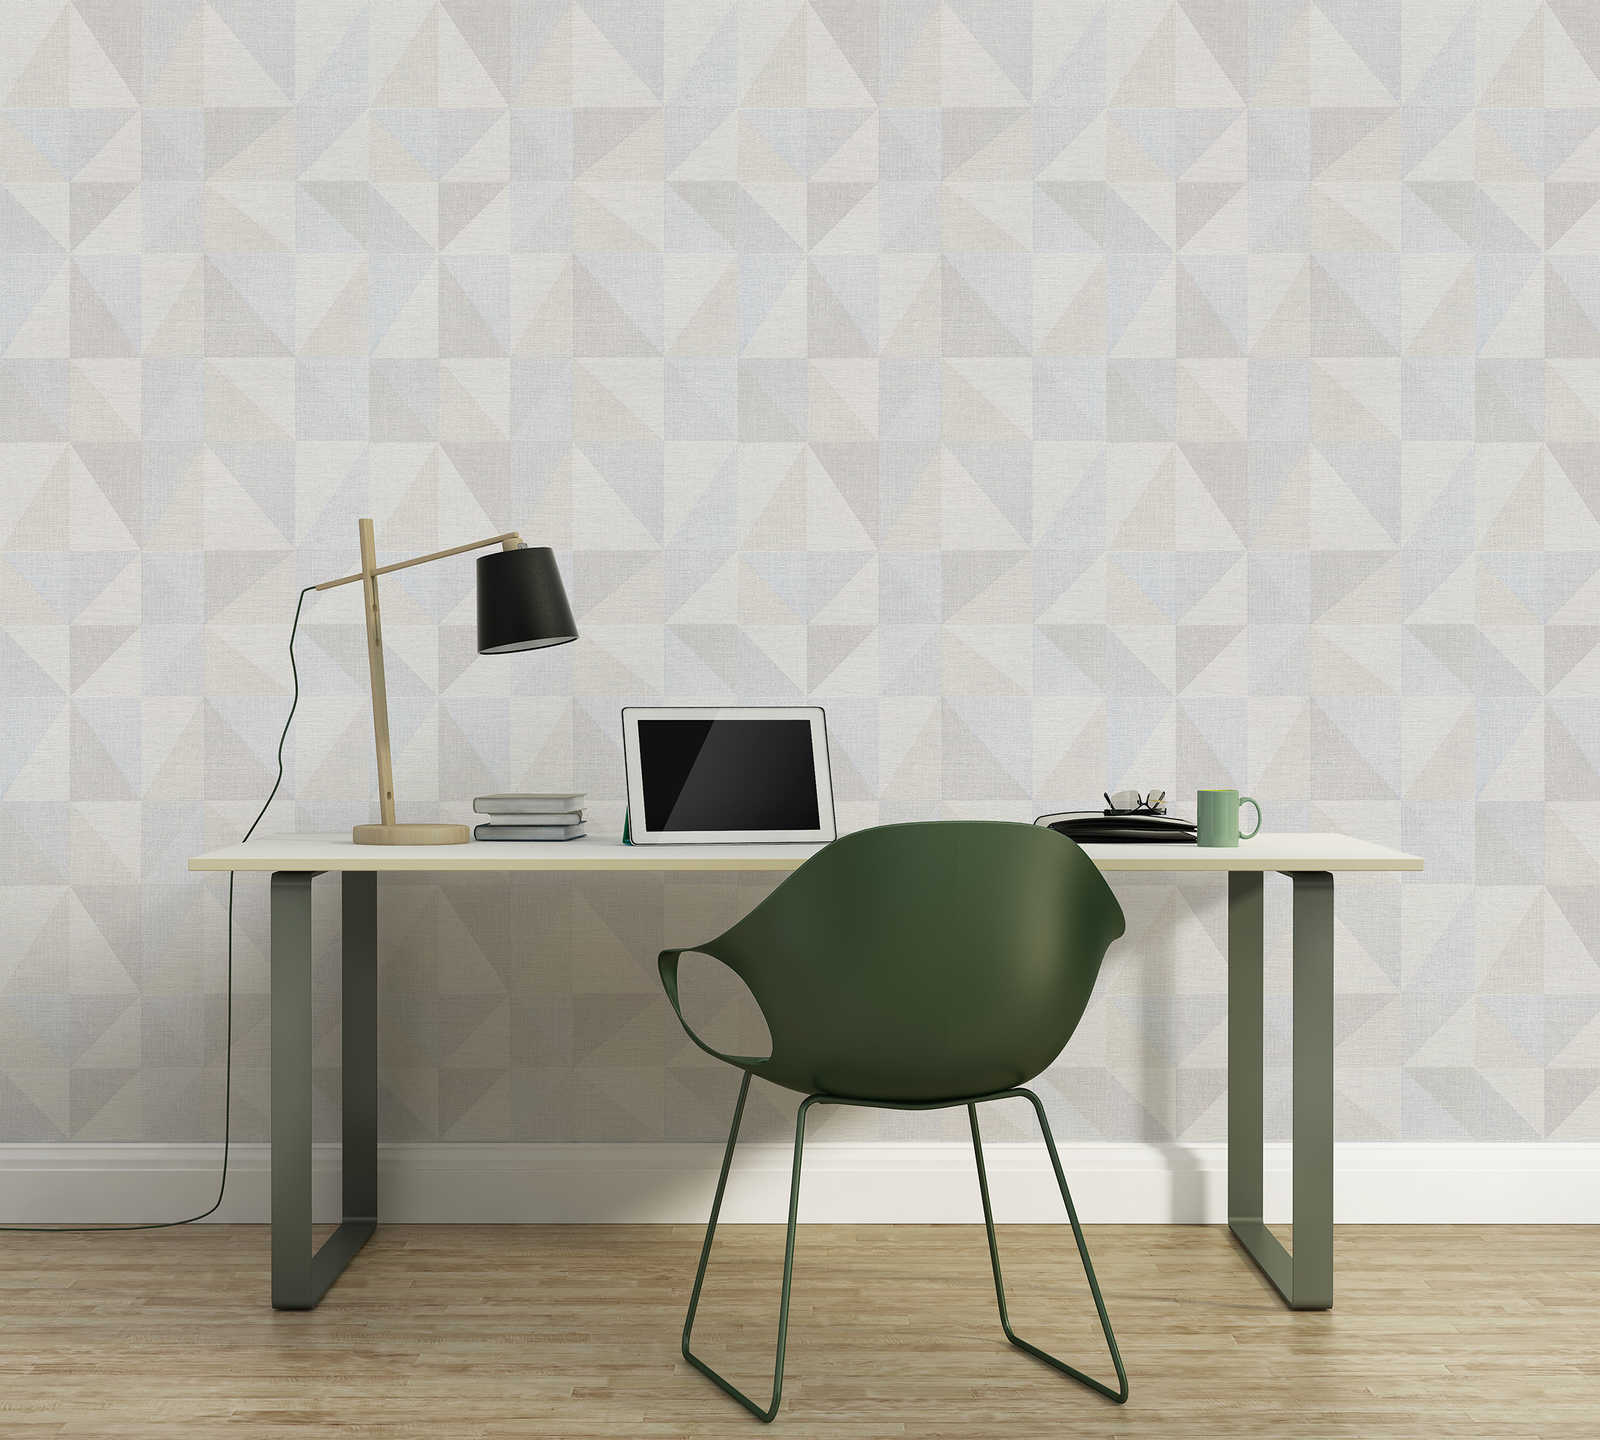             Non-woven wallpaper Scandi design & geometric pattern - grey
        